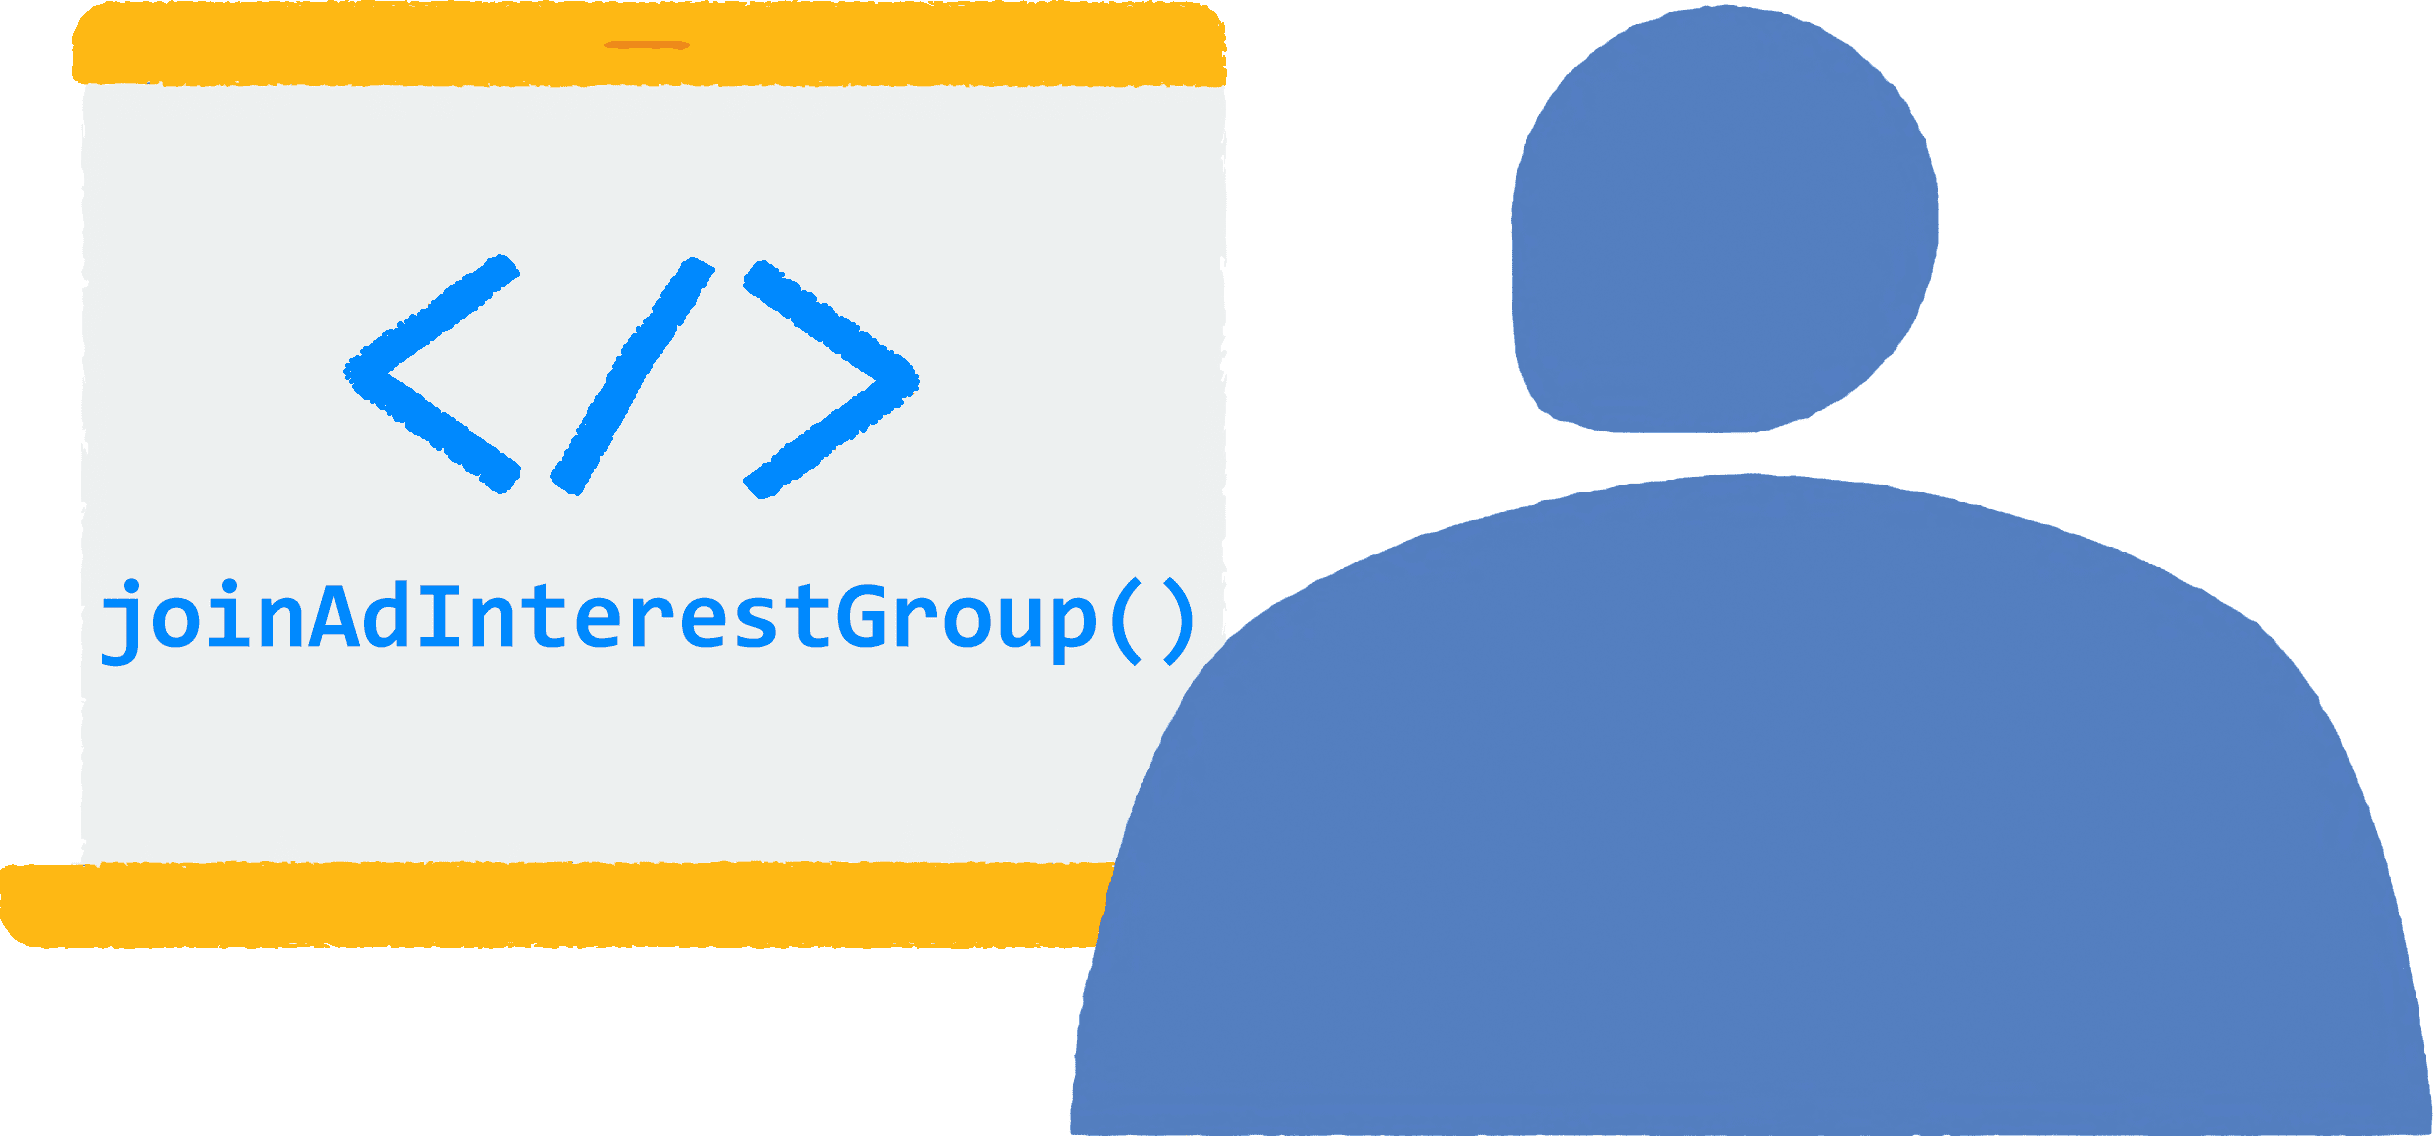 ノートパソコンのブラウザでサイトを閲覧しているユーザーのイラスト。JavaScript コードの joinAdInterestGroup() がブラウザで実行されています。